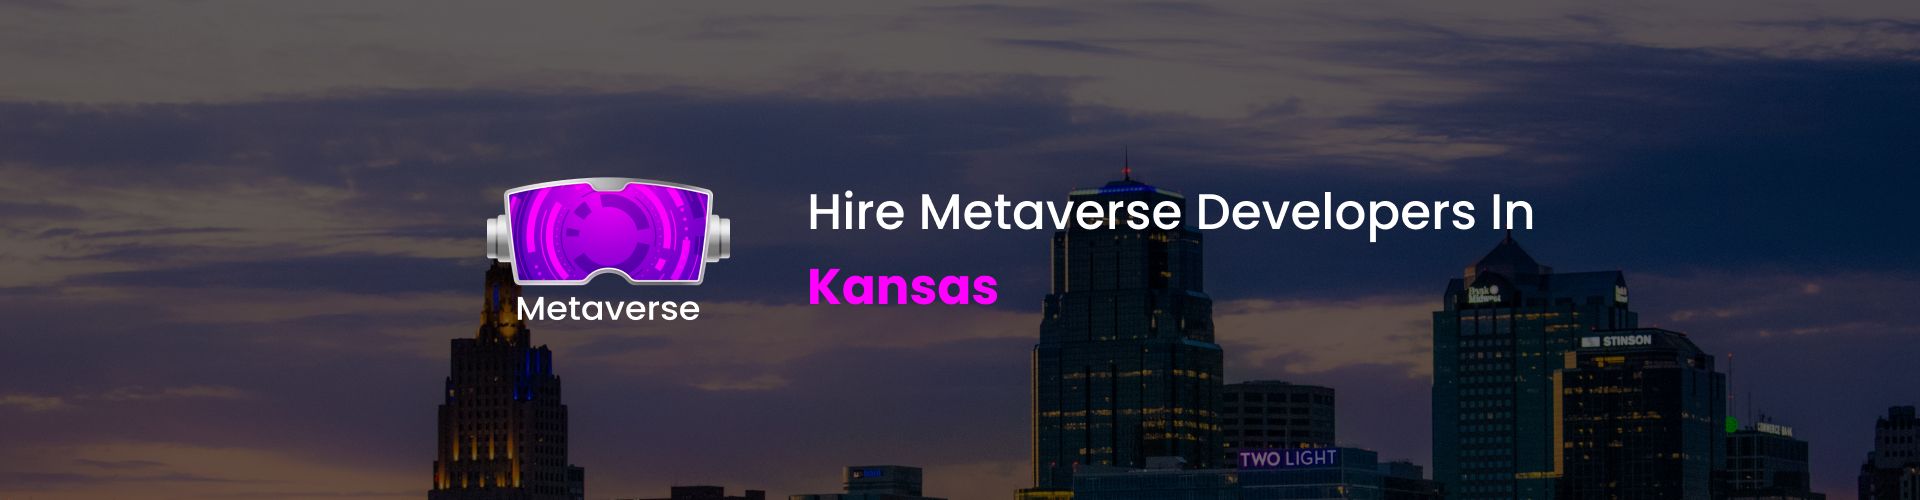 hire metaverse developers in kansas